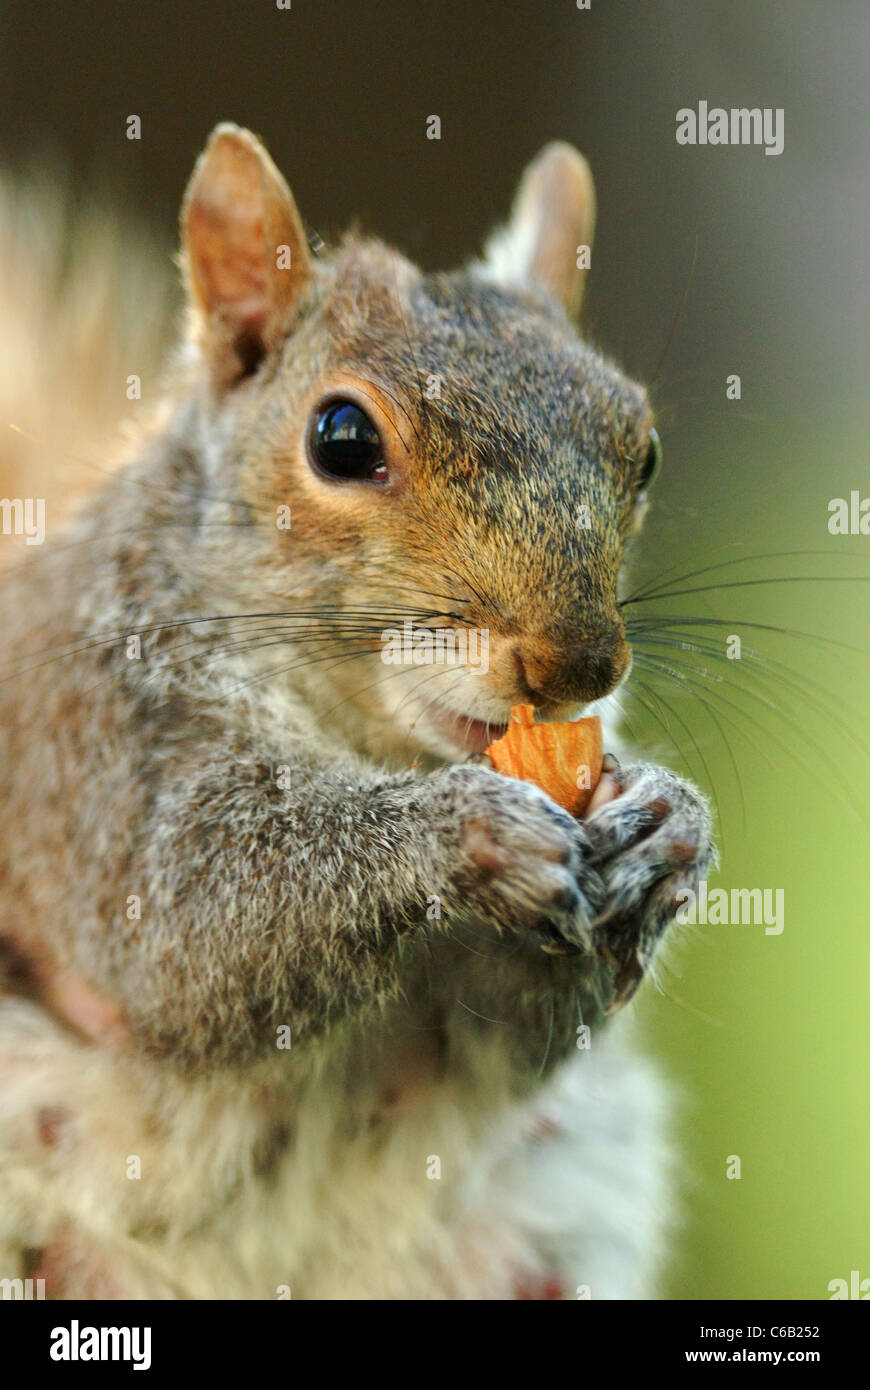 Grey Squirrel (Sciurus carolinensis) eating a nut in Union Square Park  Stock Photo - Alamy